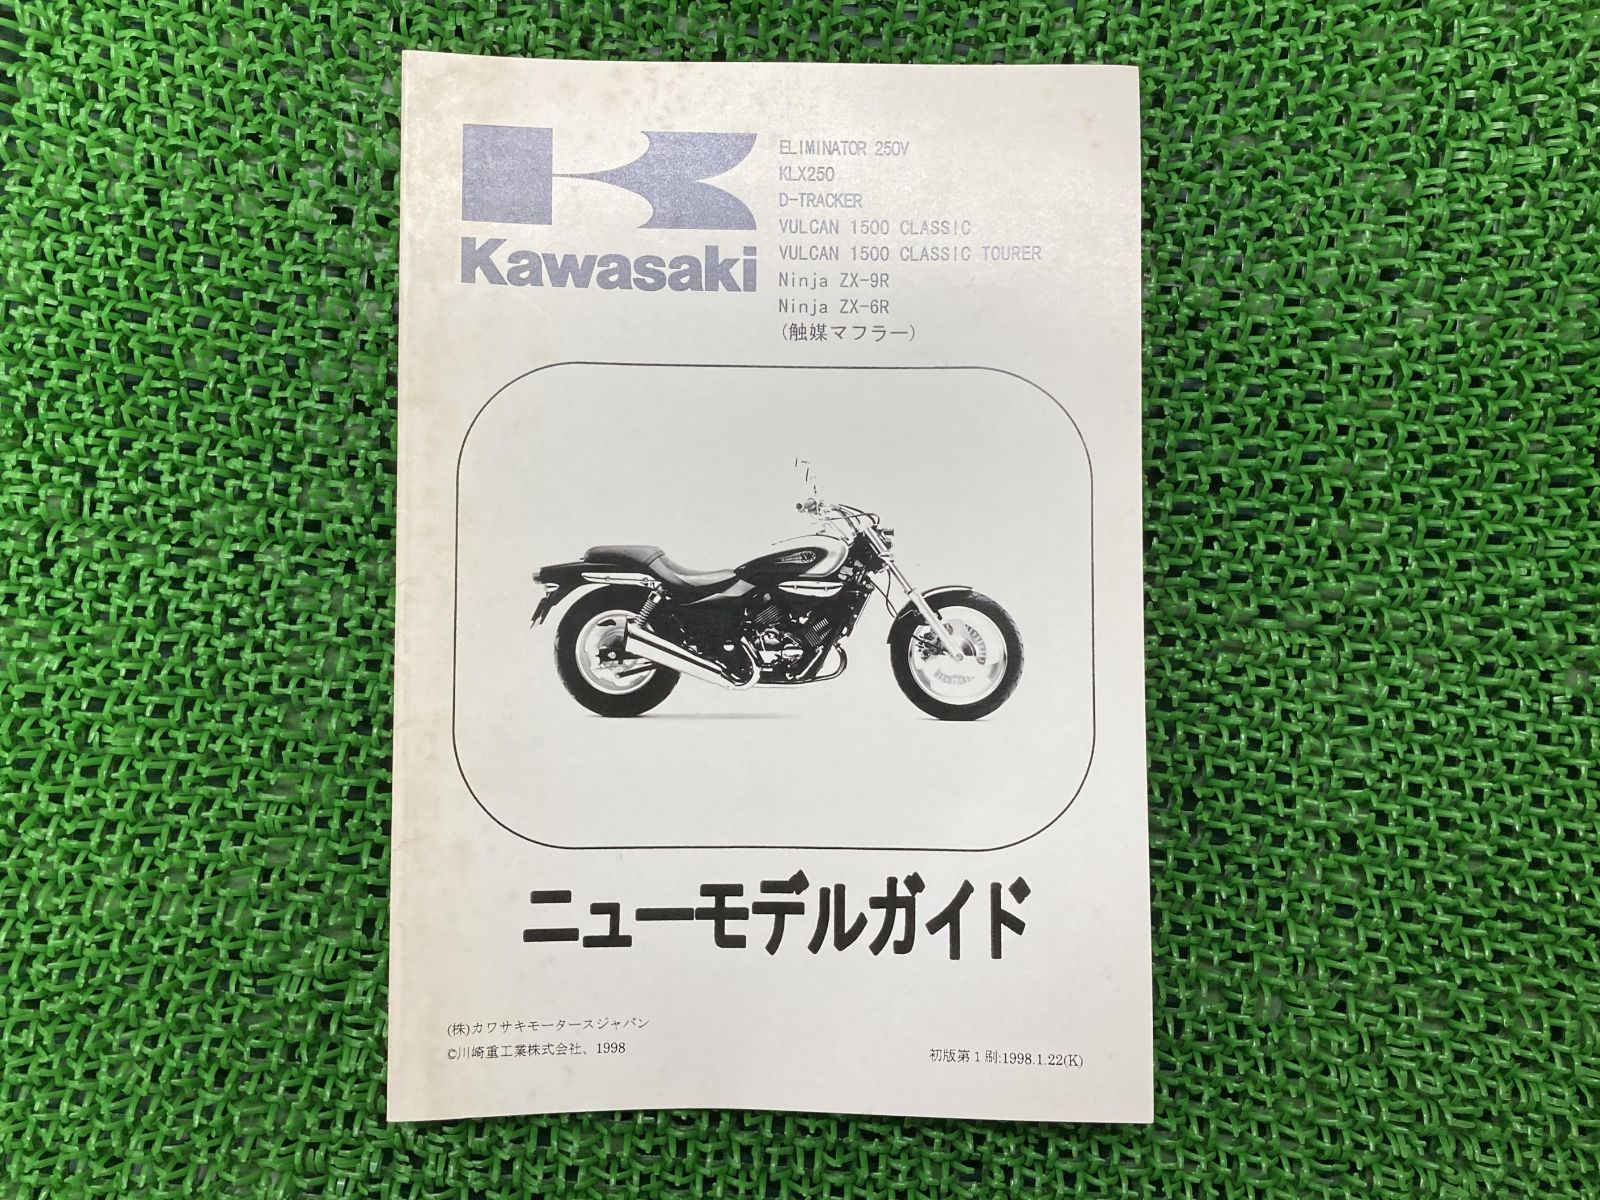 Kawasaki Ninja ZX-9R サービスマニュアル - カタログ/マニュアル